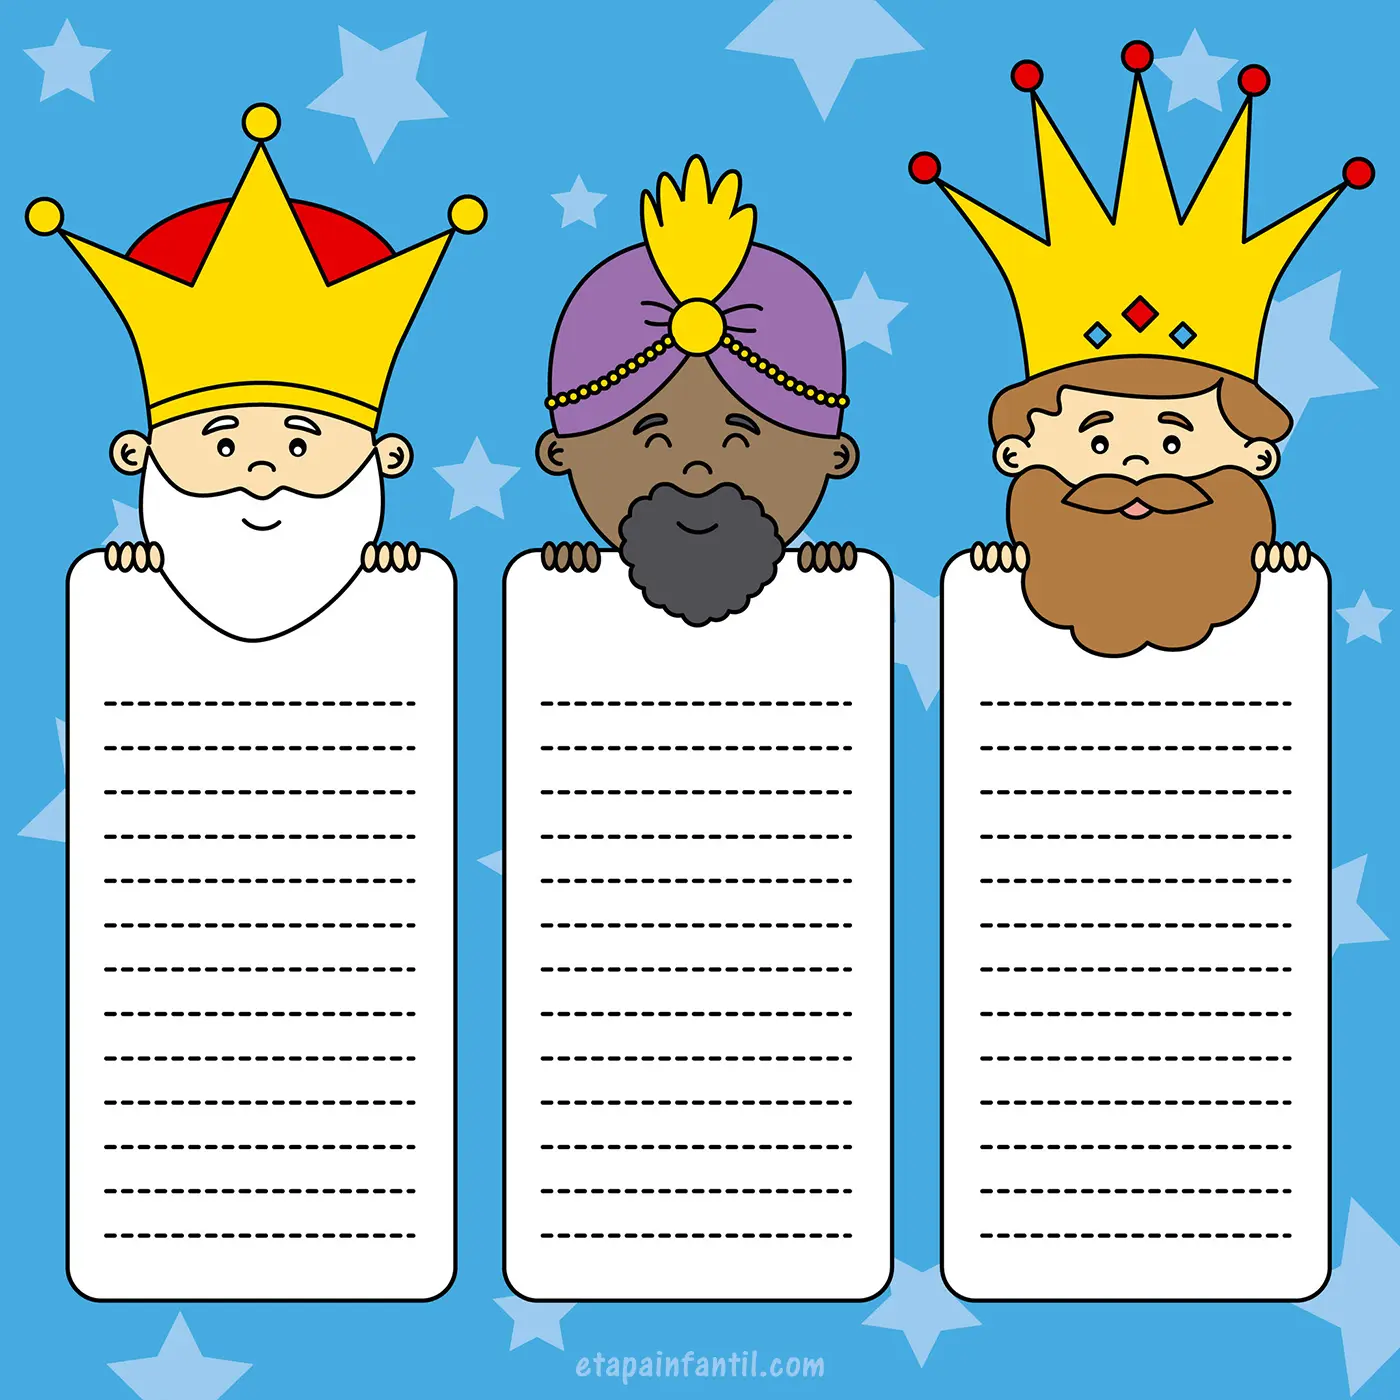 Carta de los Reyes Magos: 5 modelos gratis para imprimir y rellenar - Etapa  Infantil